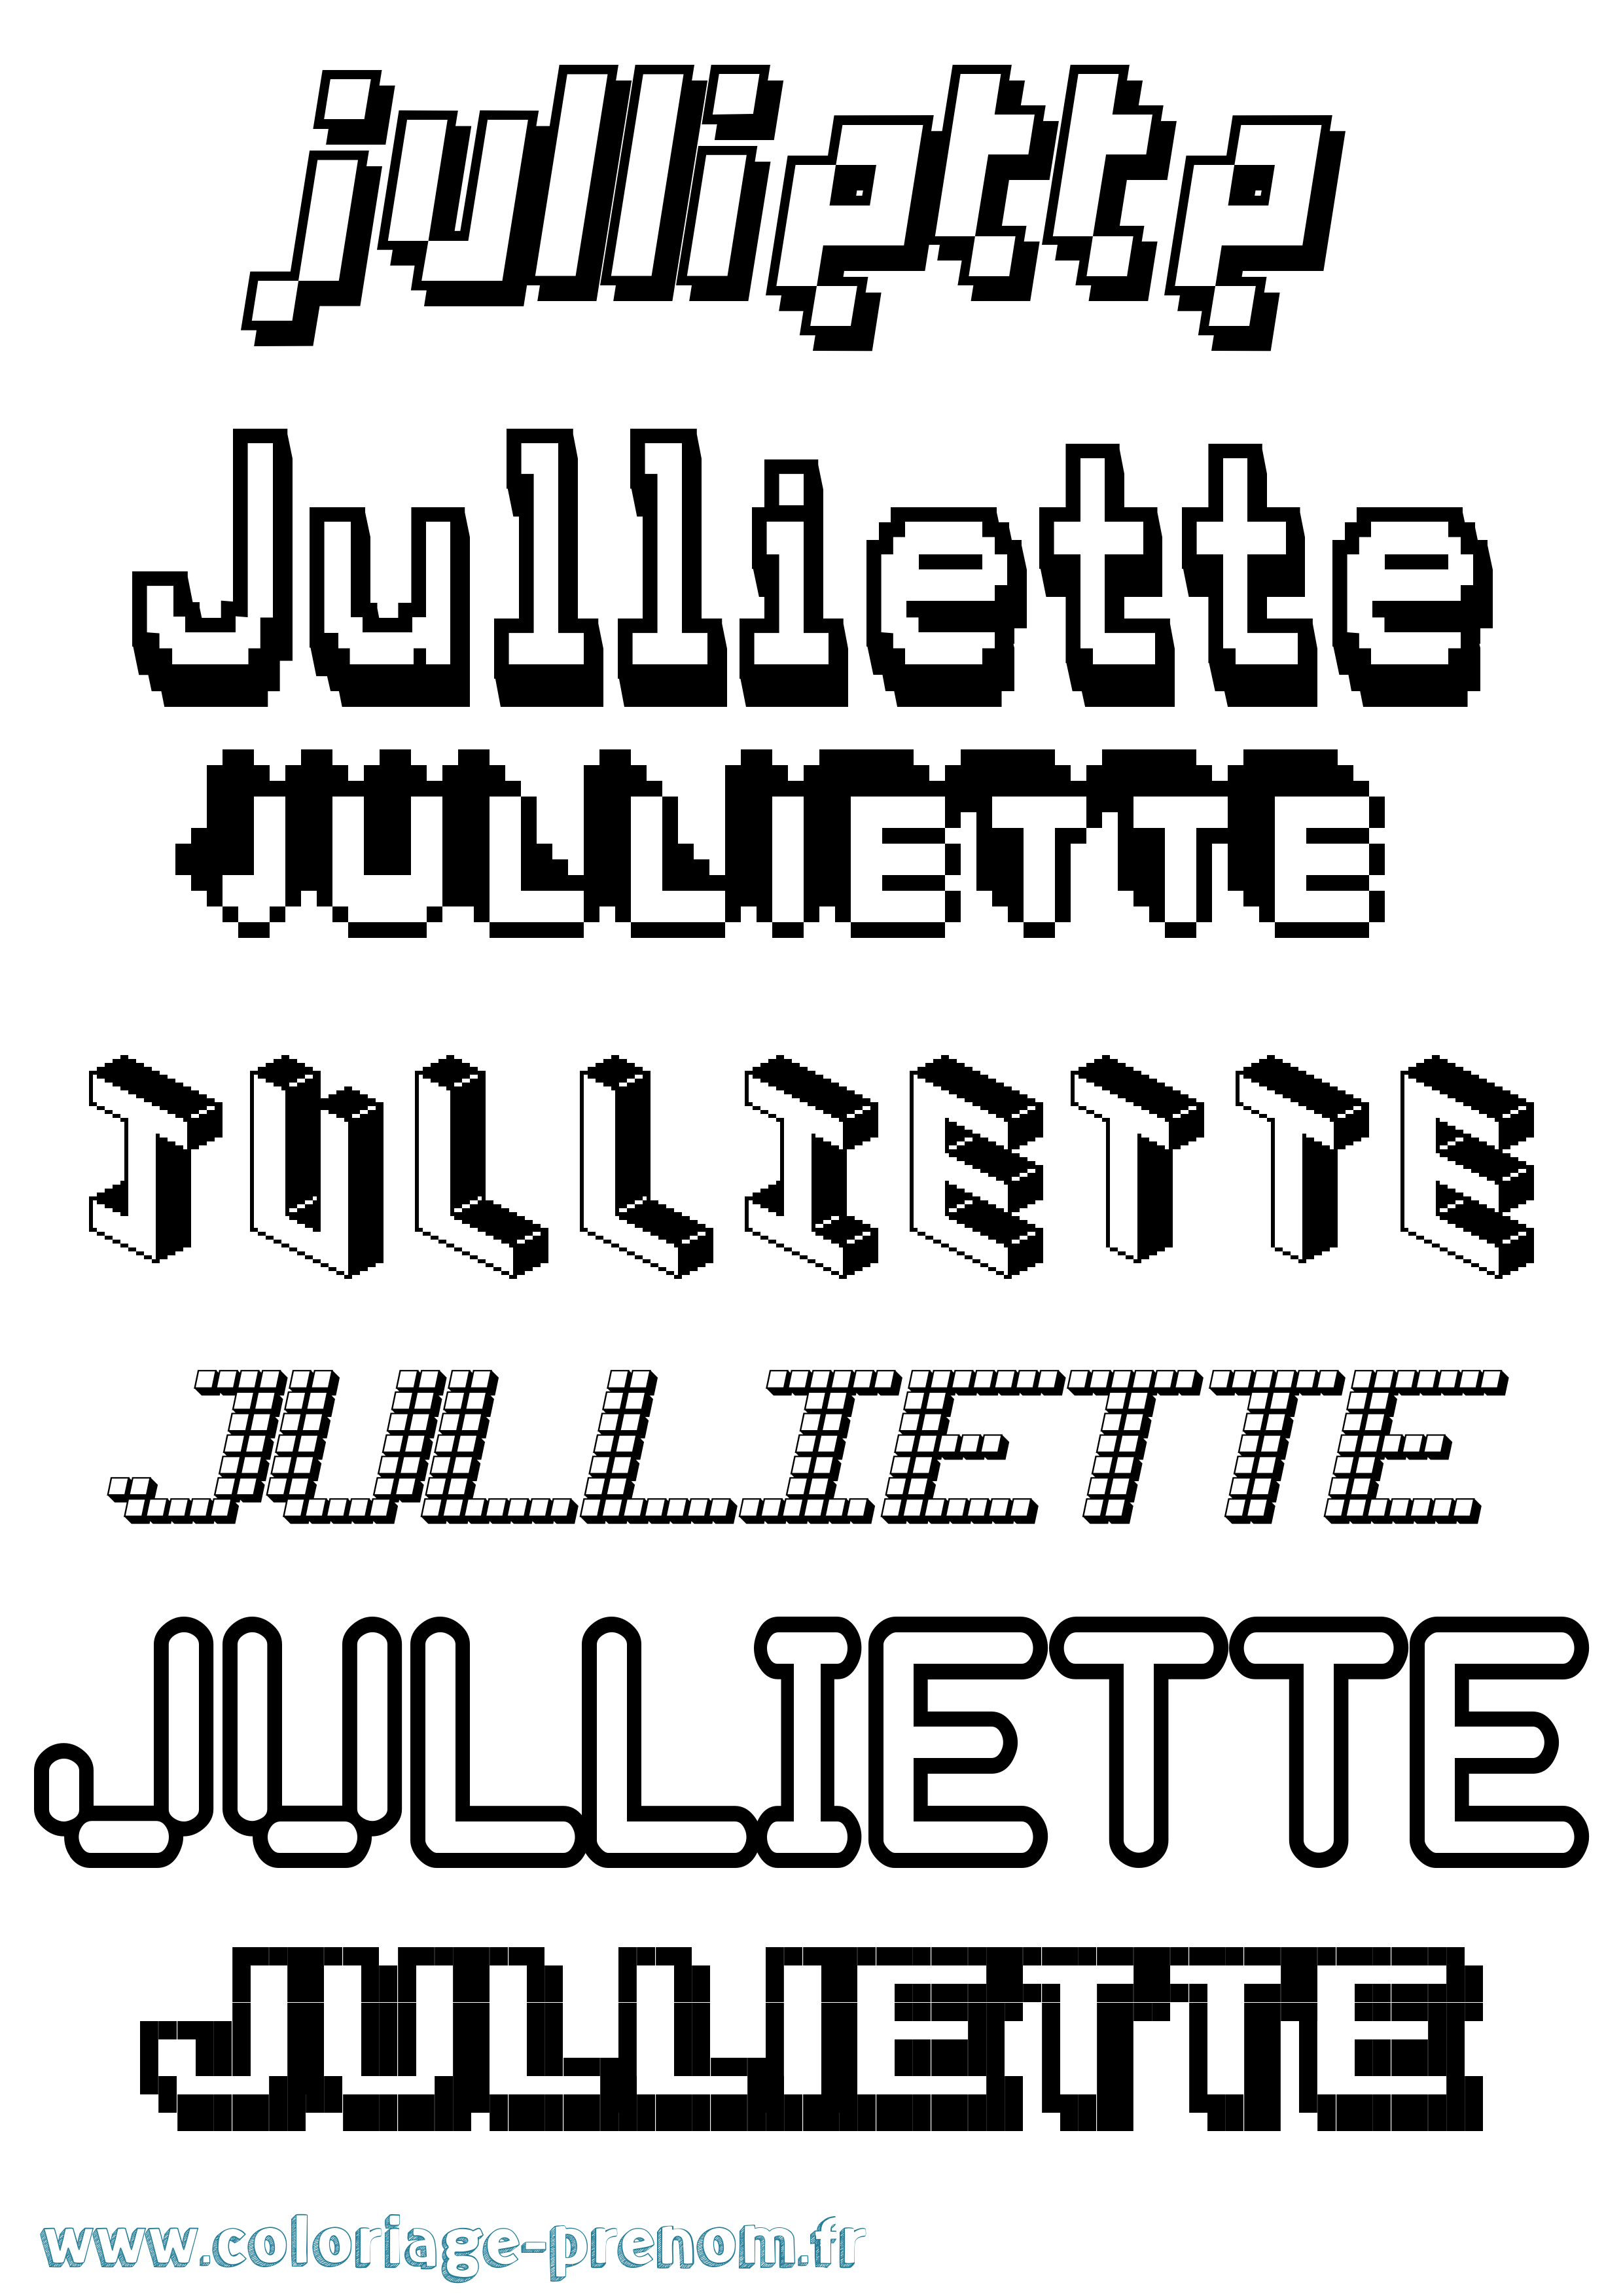 Coloriage prénom Julliette Pixel